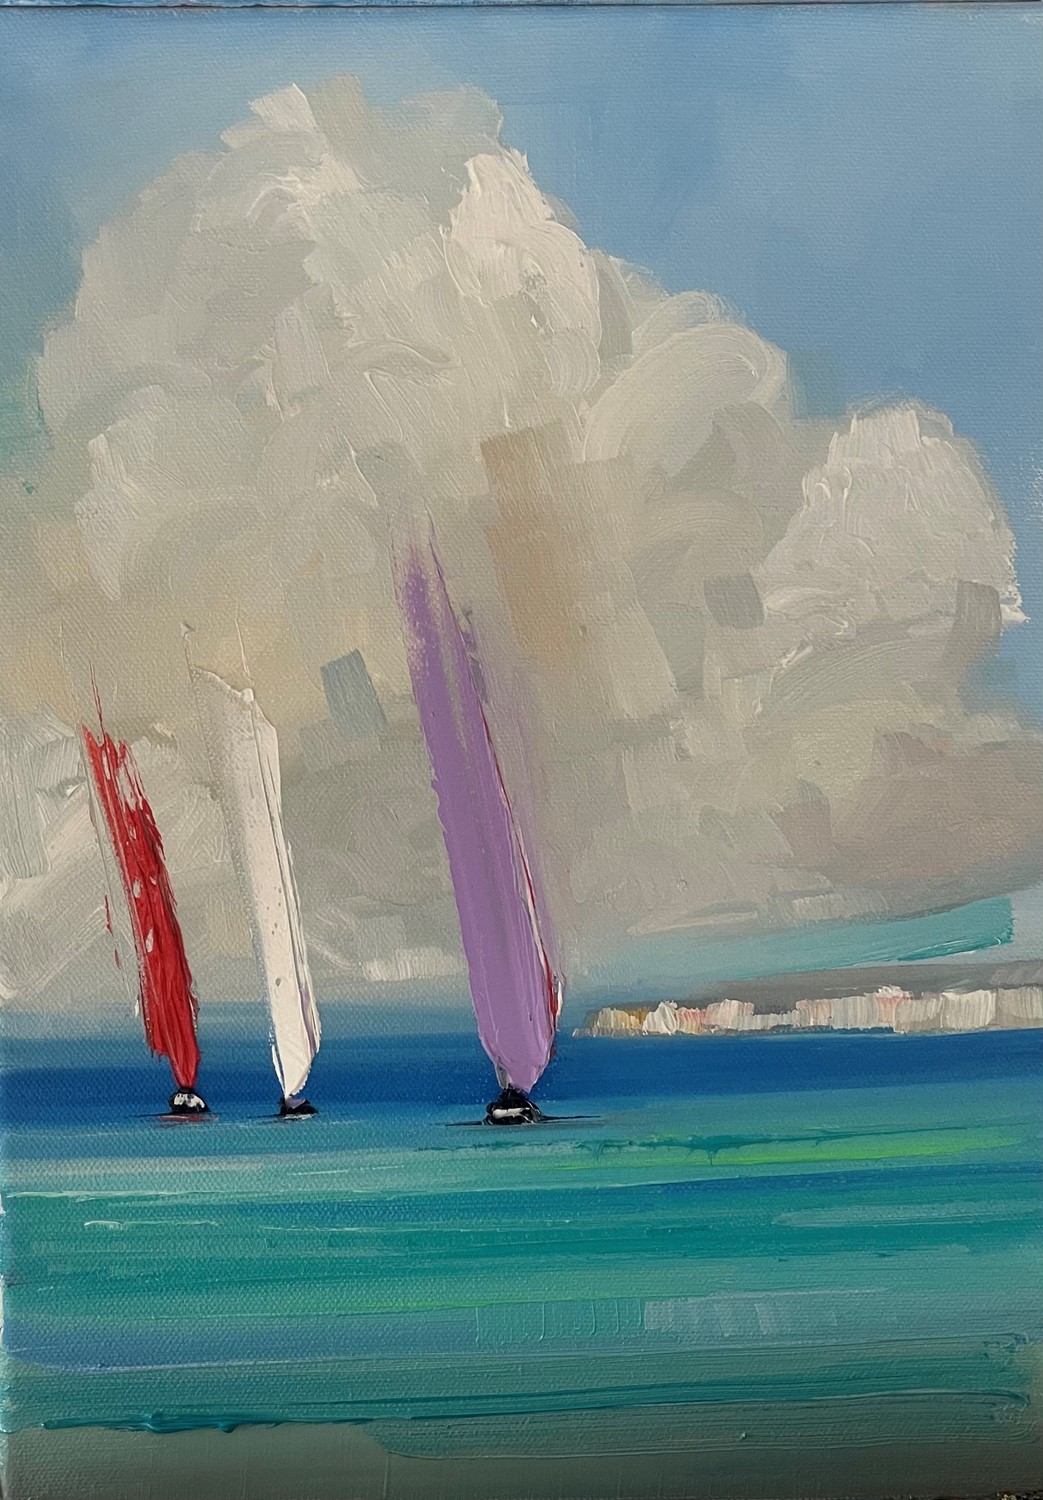 'Triple sails ' by artist Rosanne Barr